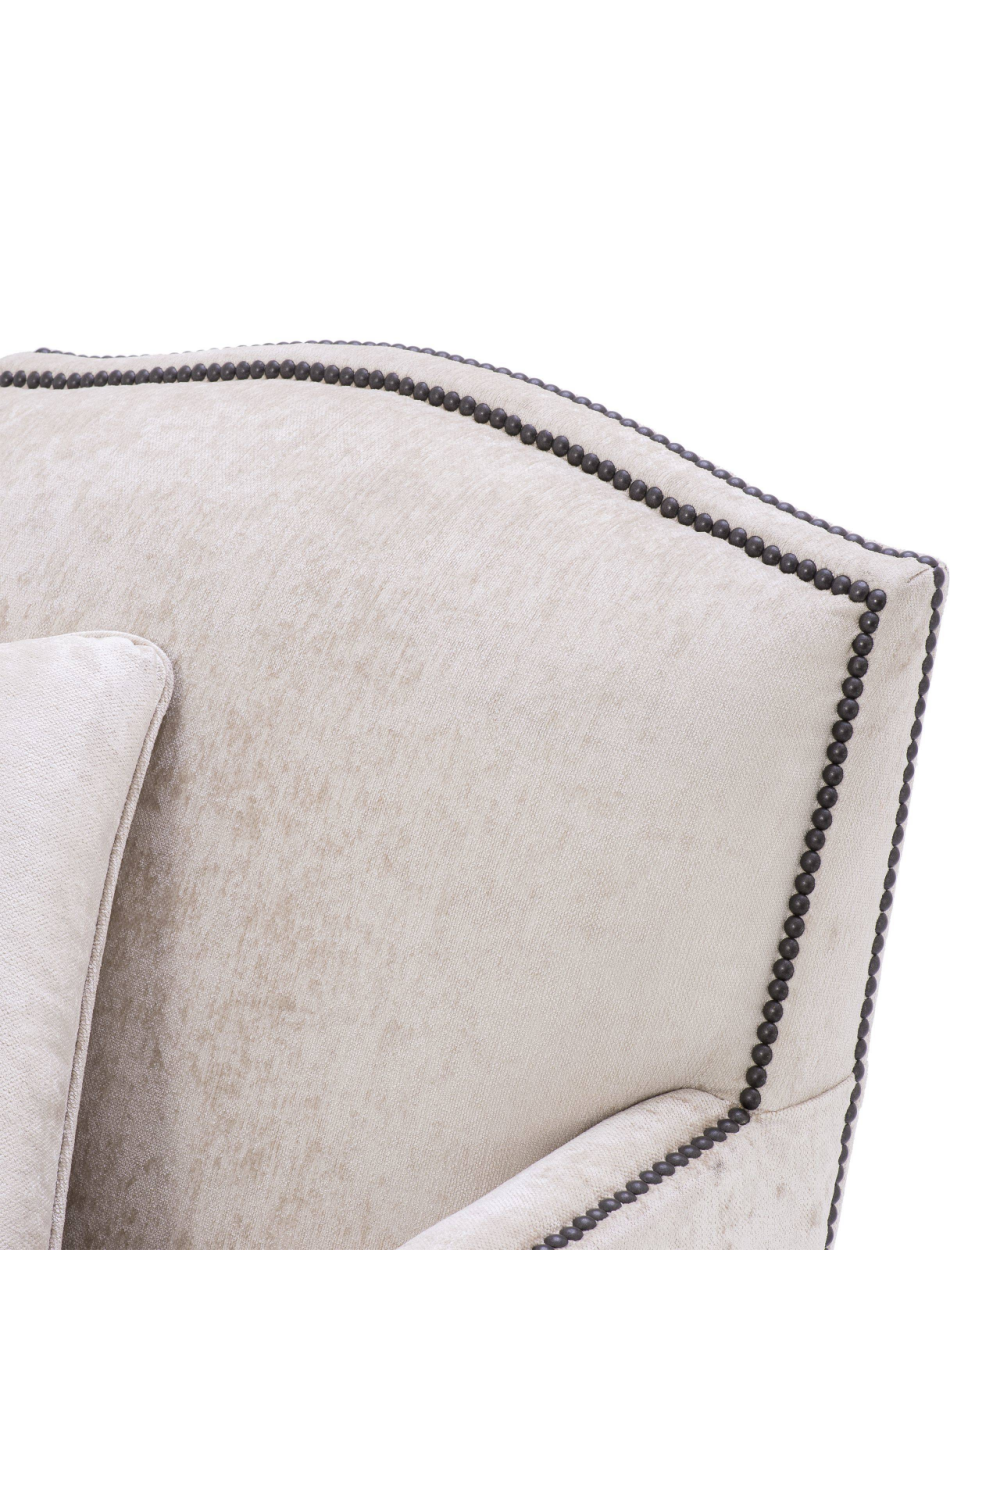 Off-White Slipper Chair | Eichholtz Merlin | Oroa.com